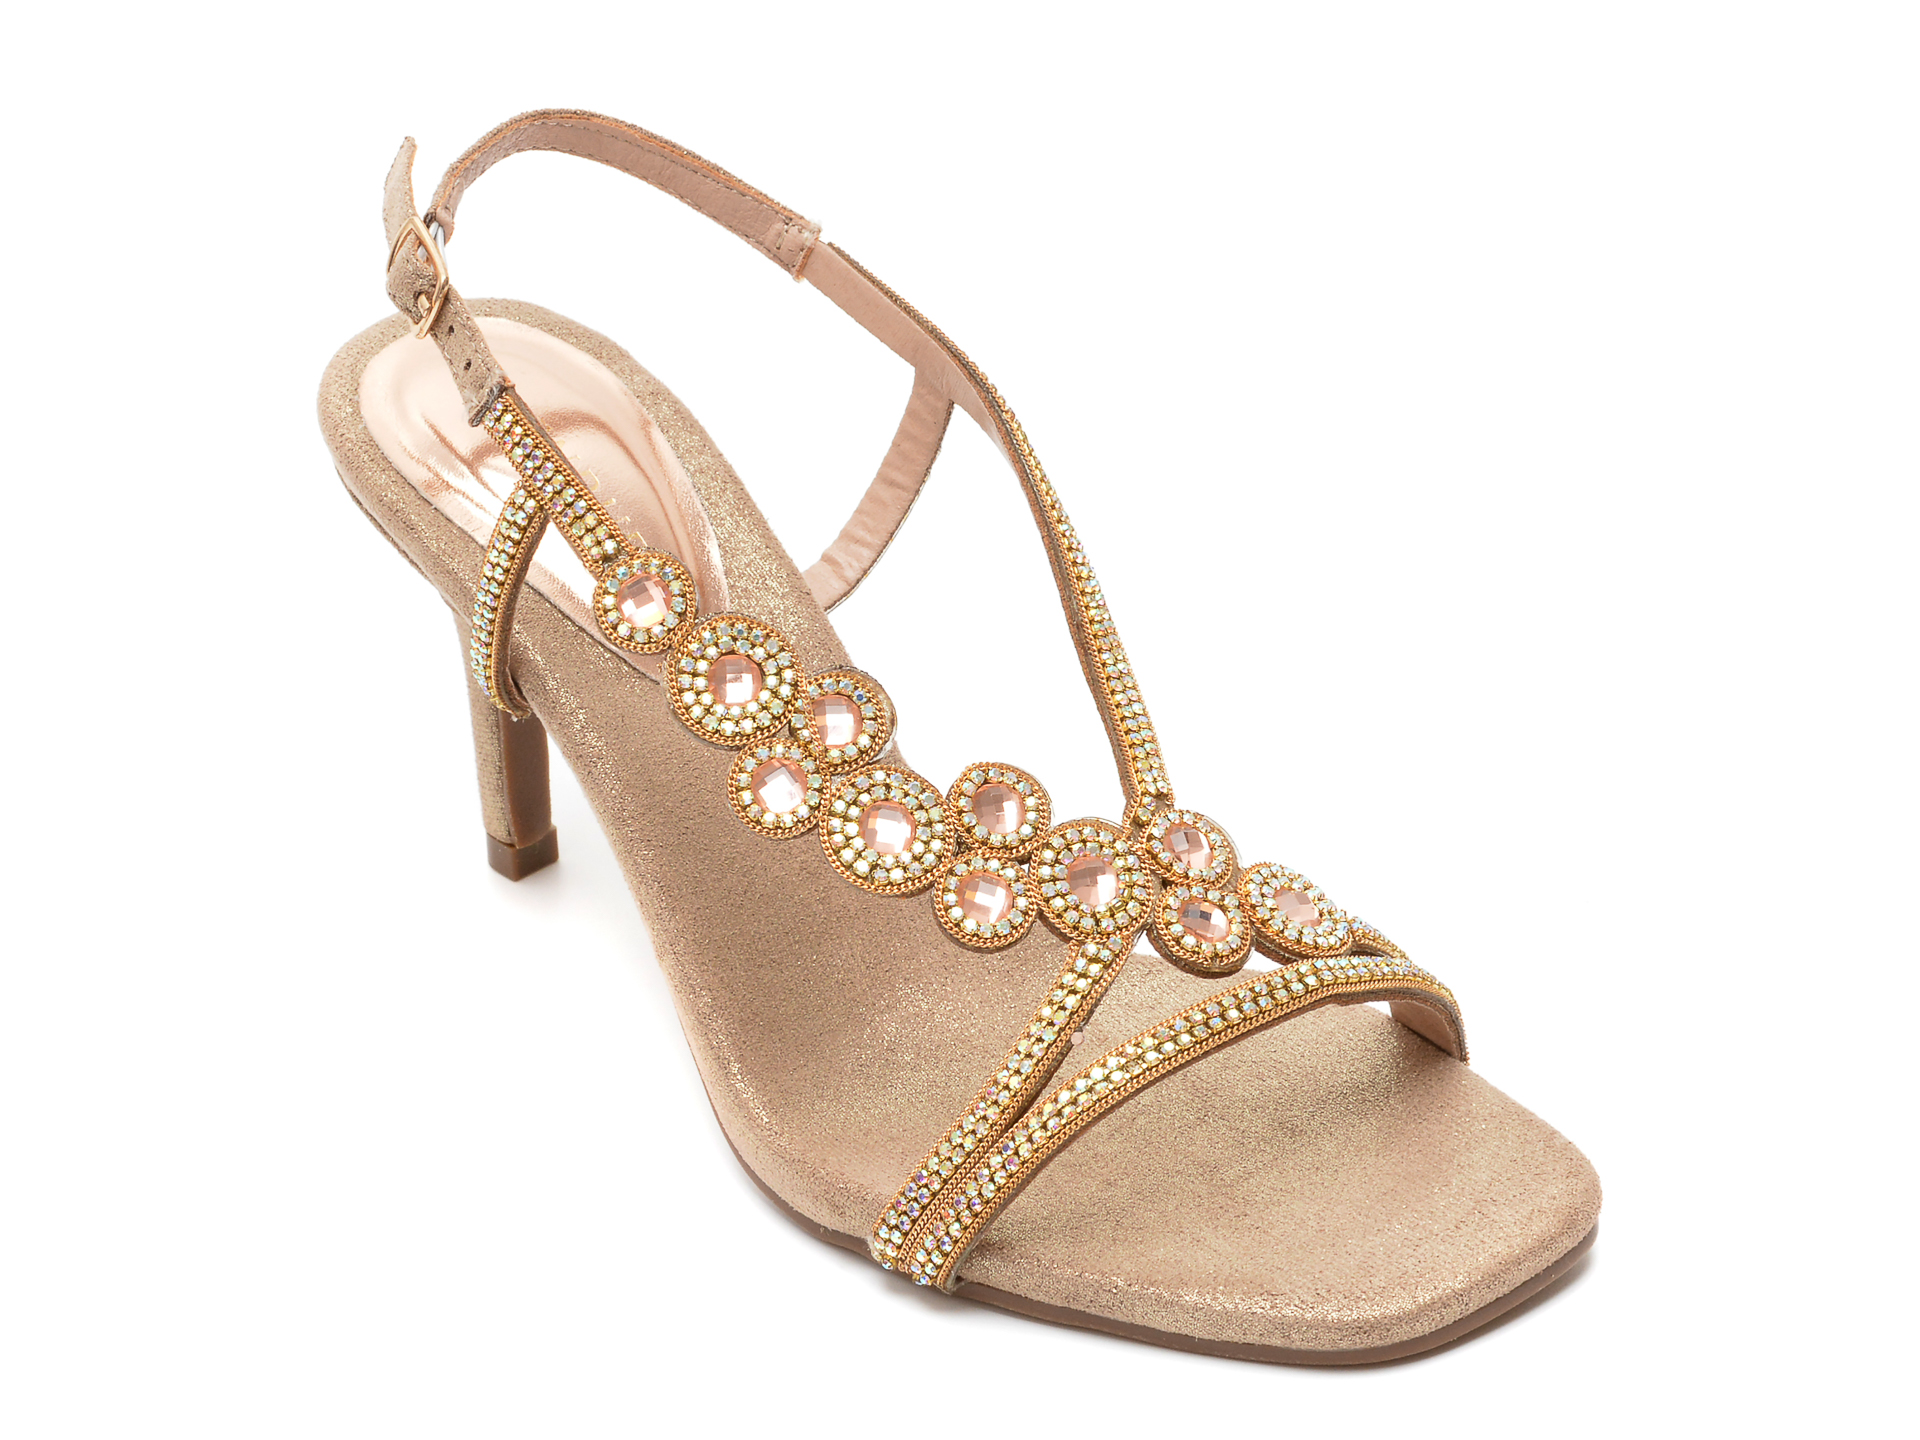 Sandale MENBUR aurii, 23011, din material textil /femei/sandale